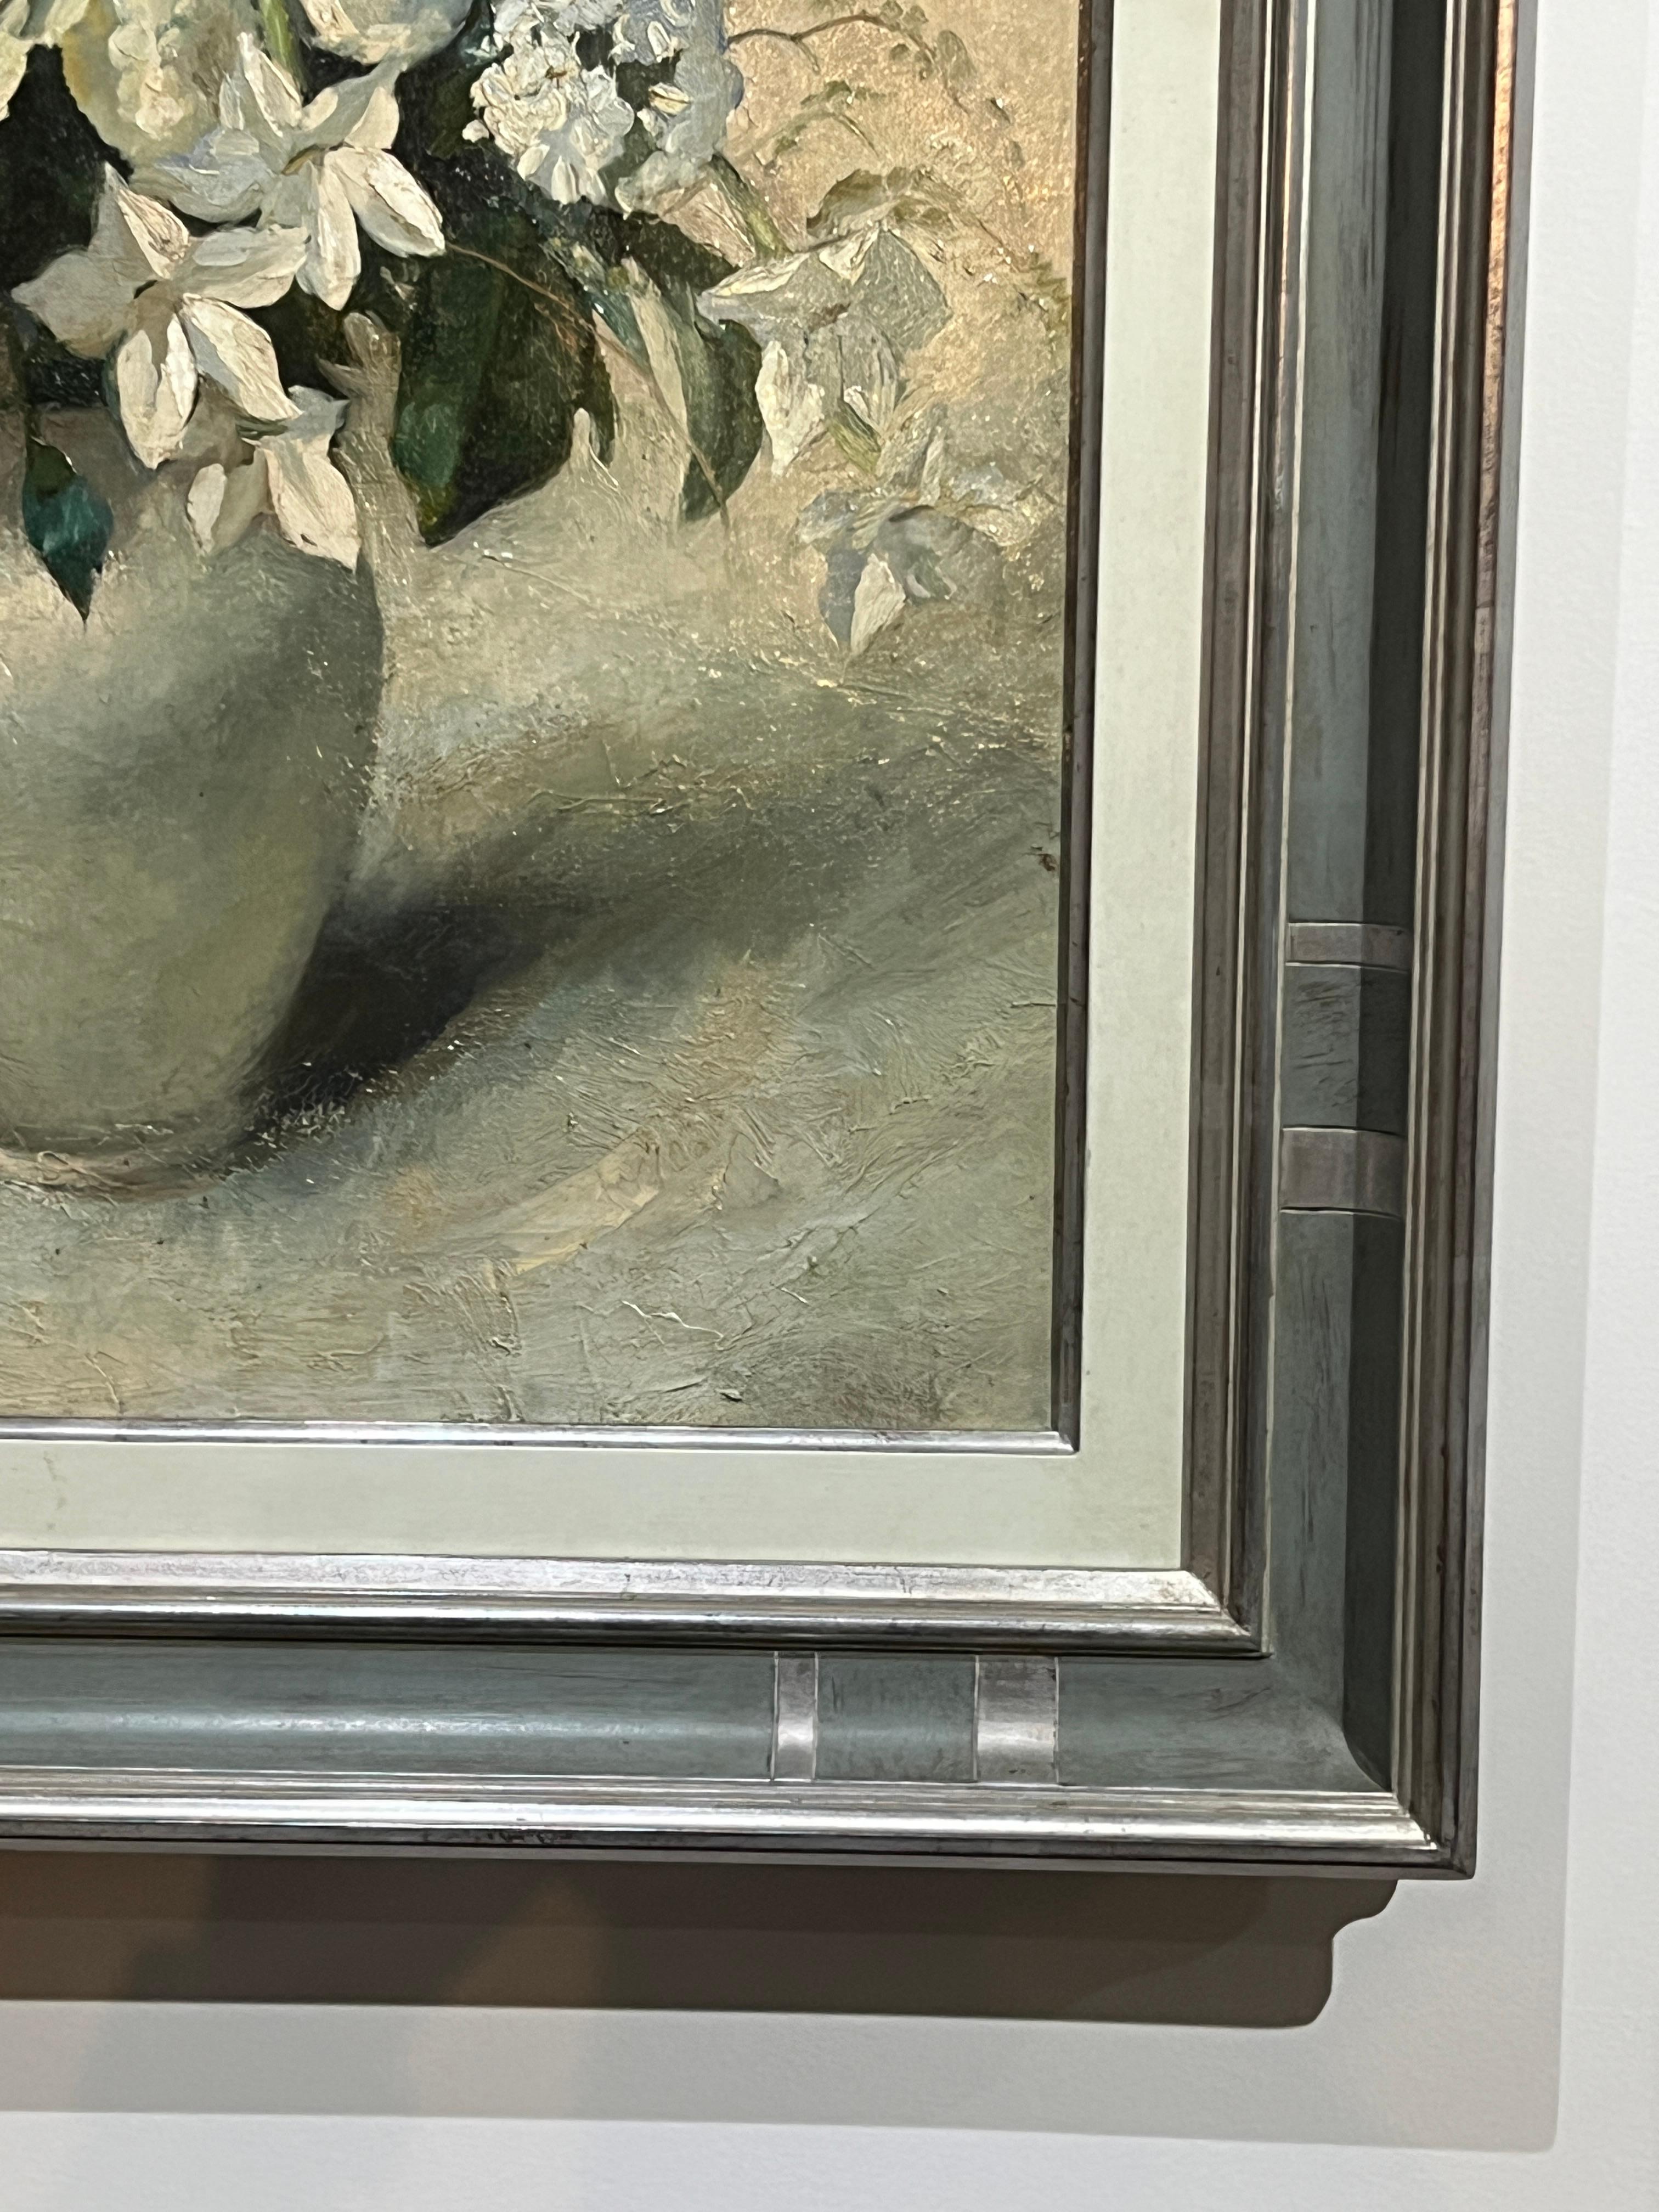 Ein weißes Blumenarrangement mit Grüntönen. Unterzeichnet von Clément Serveau. Datiert 1937.
Made in France Dieses zeitlose Ölgemälde auf Leinwand, das 1937 von Clement Servenau geschaffen wurde, ist ein fesselndes Kunstwerk. Das Gemälde zeigt einen